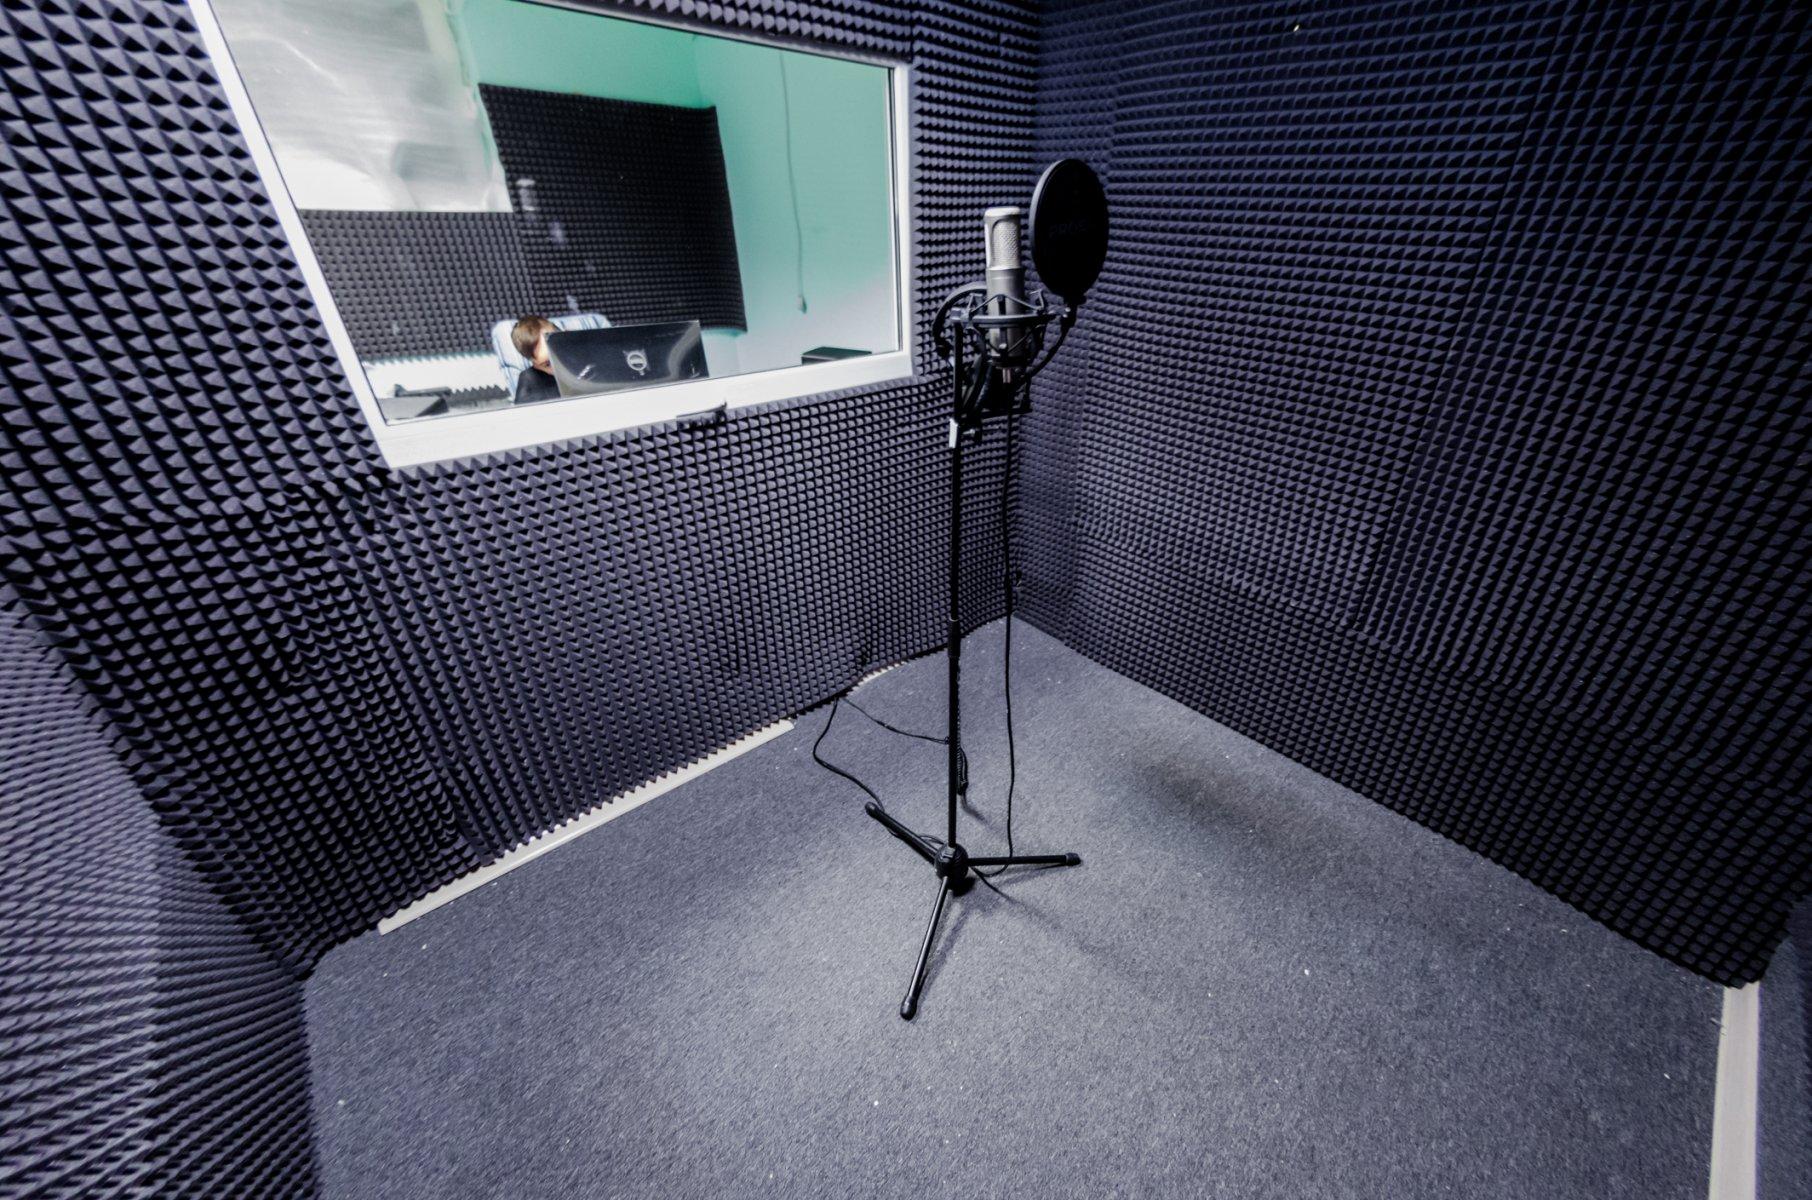 Студия где купить. Комната звукозаписи. Студия звукозаписи комната с микрофоном. Комната для записи звука. Шумоизоляция для студии записи.